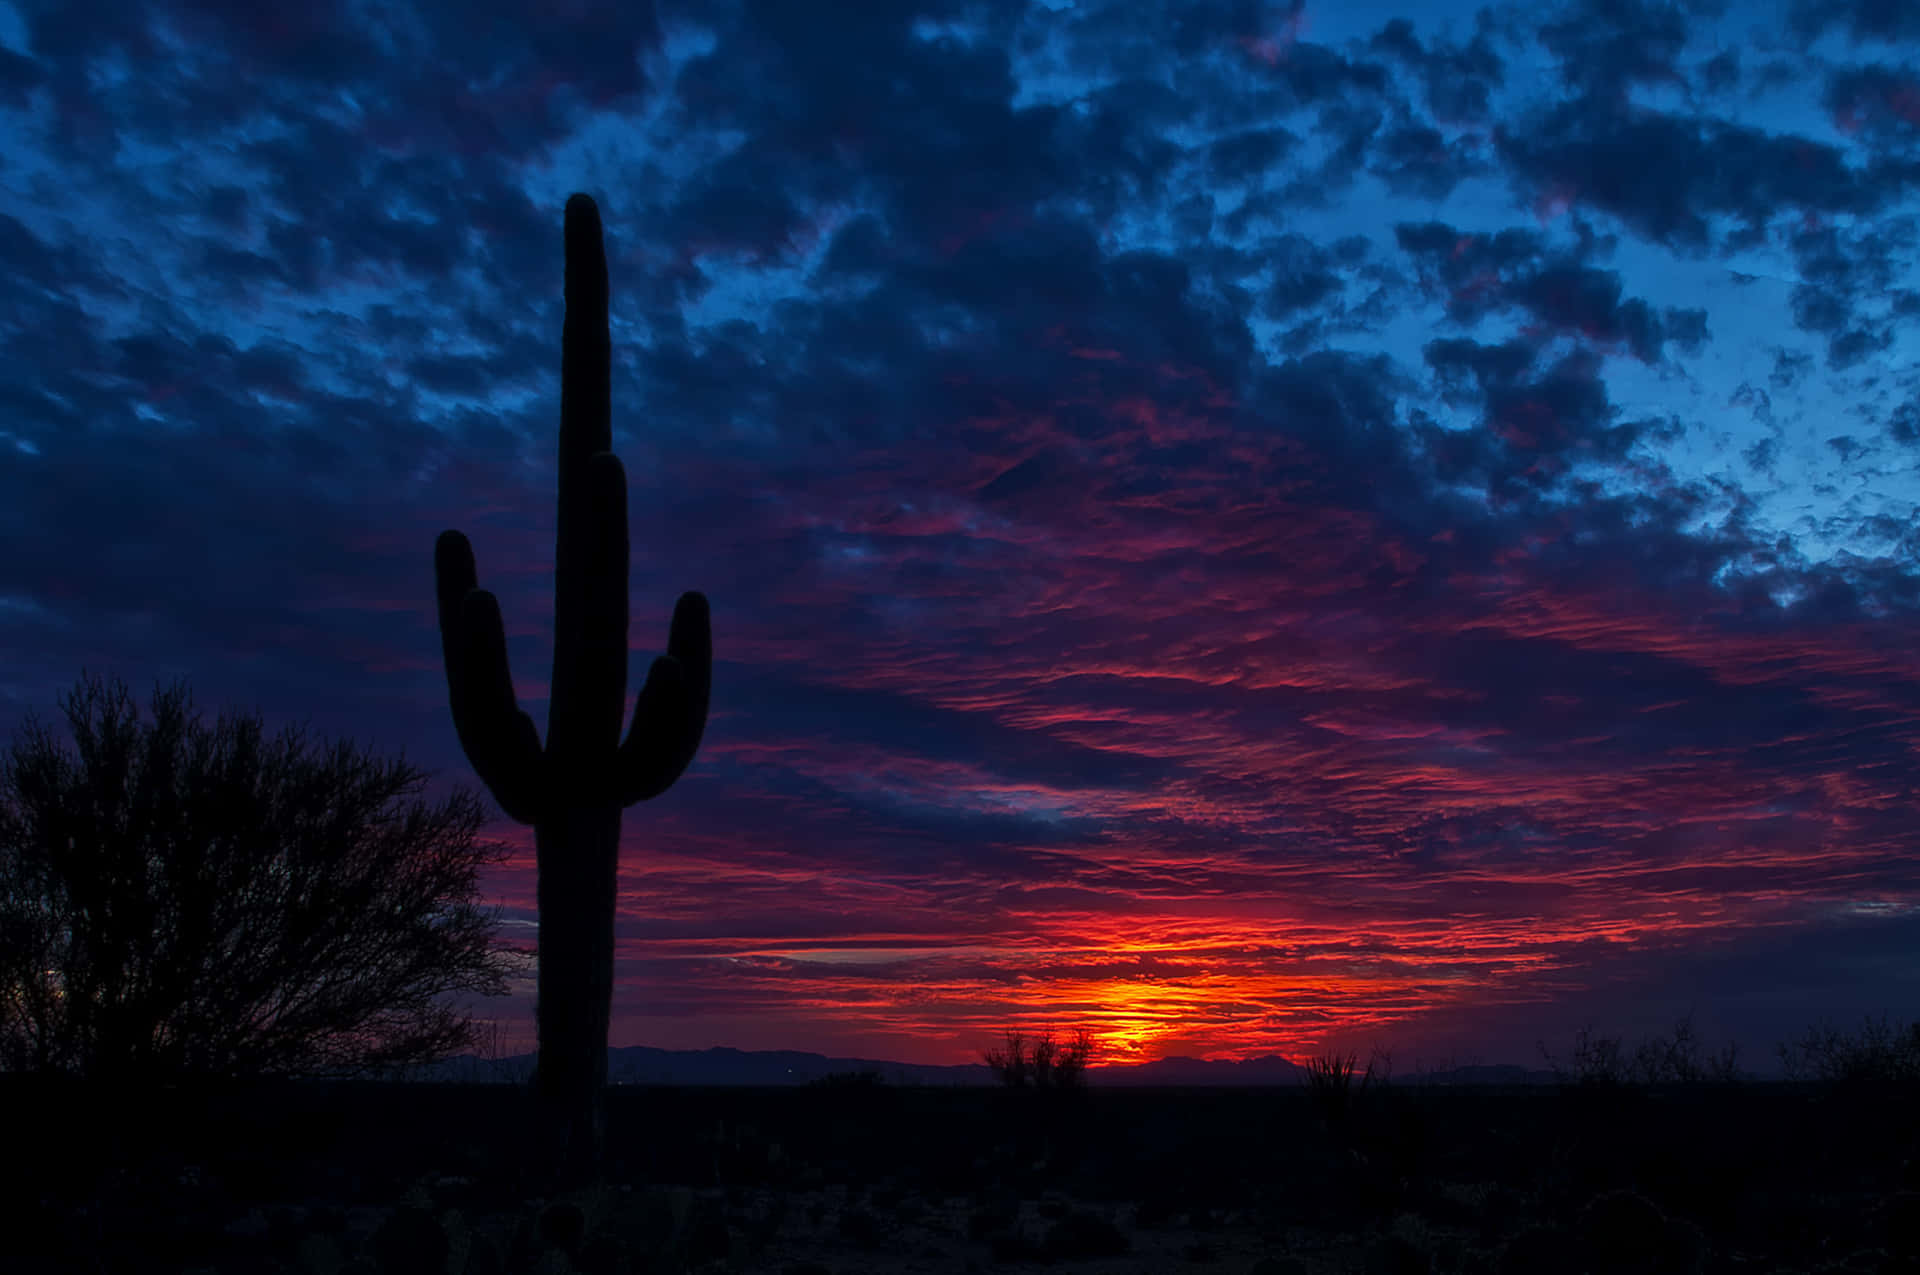 A vibrant cactus stands proudly against a desert landscape